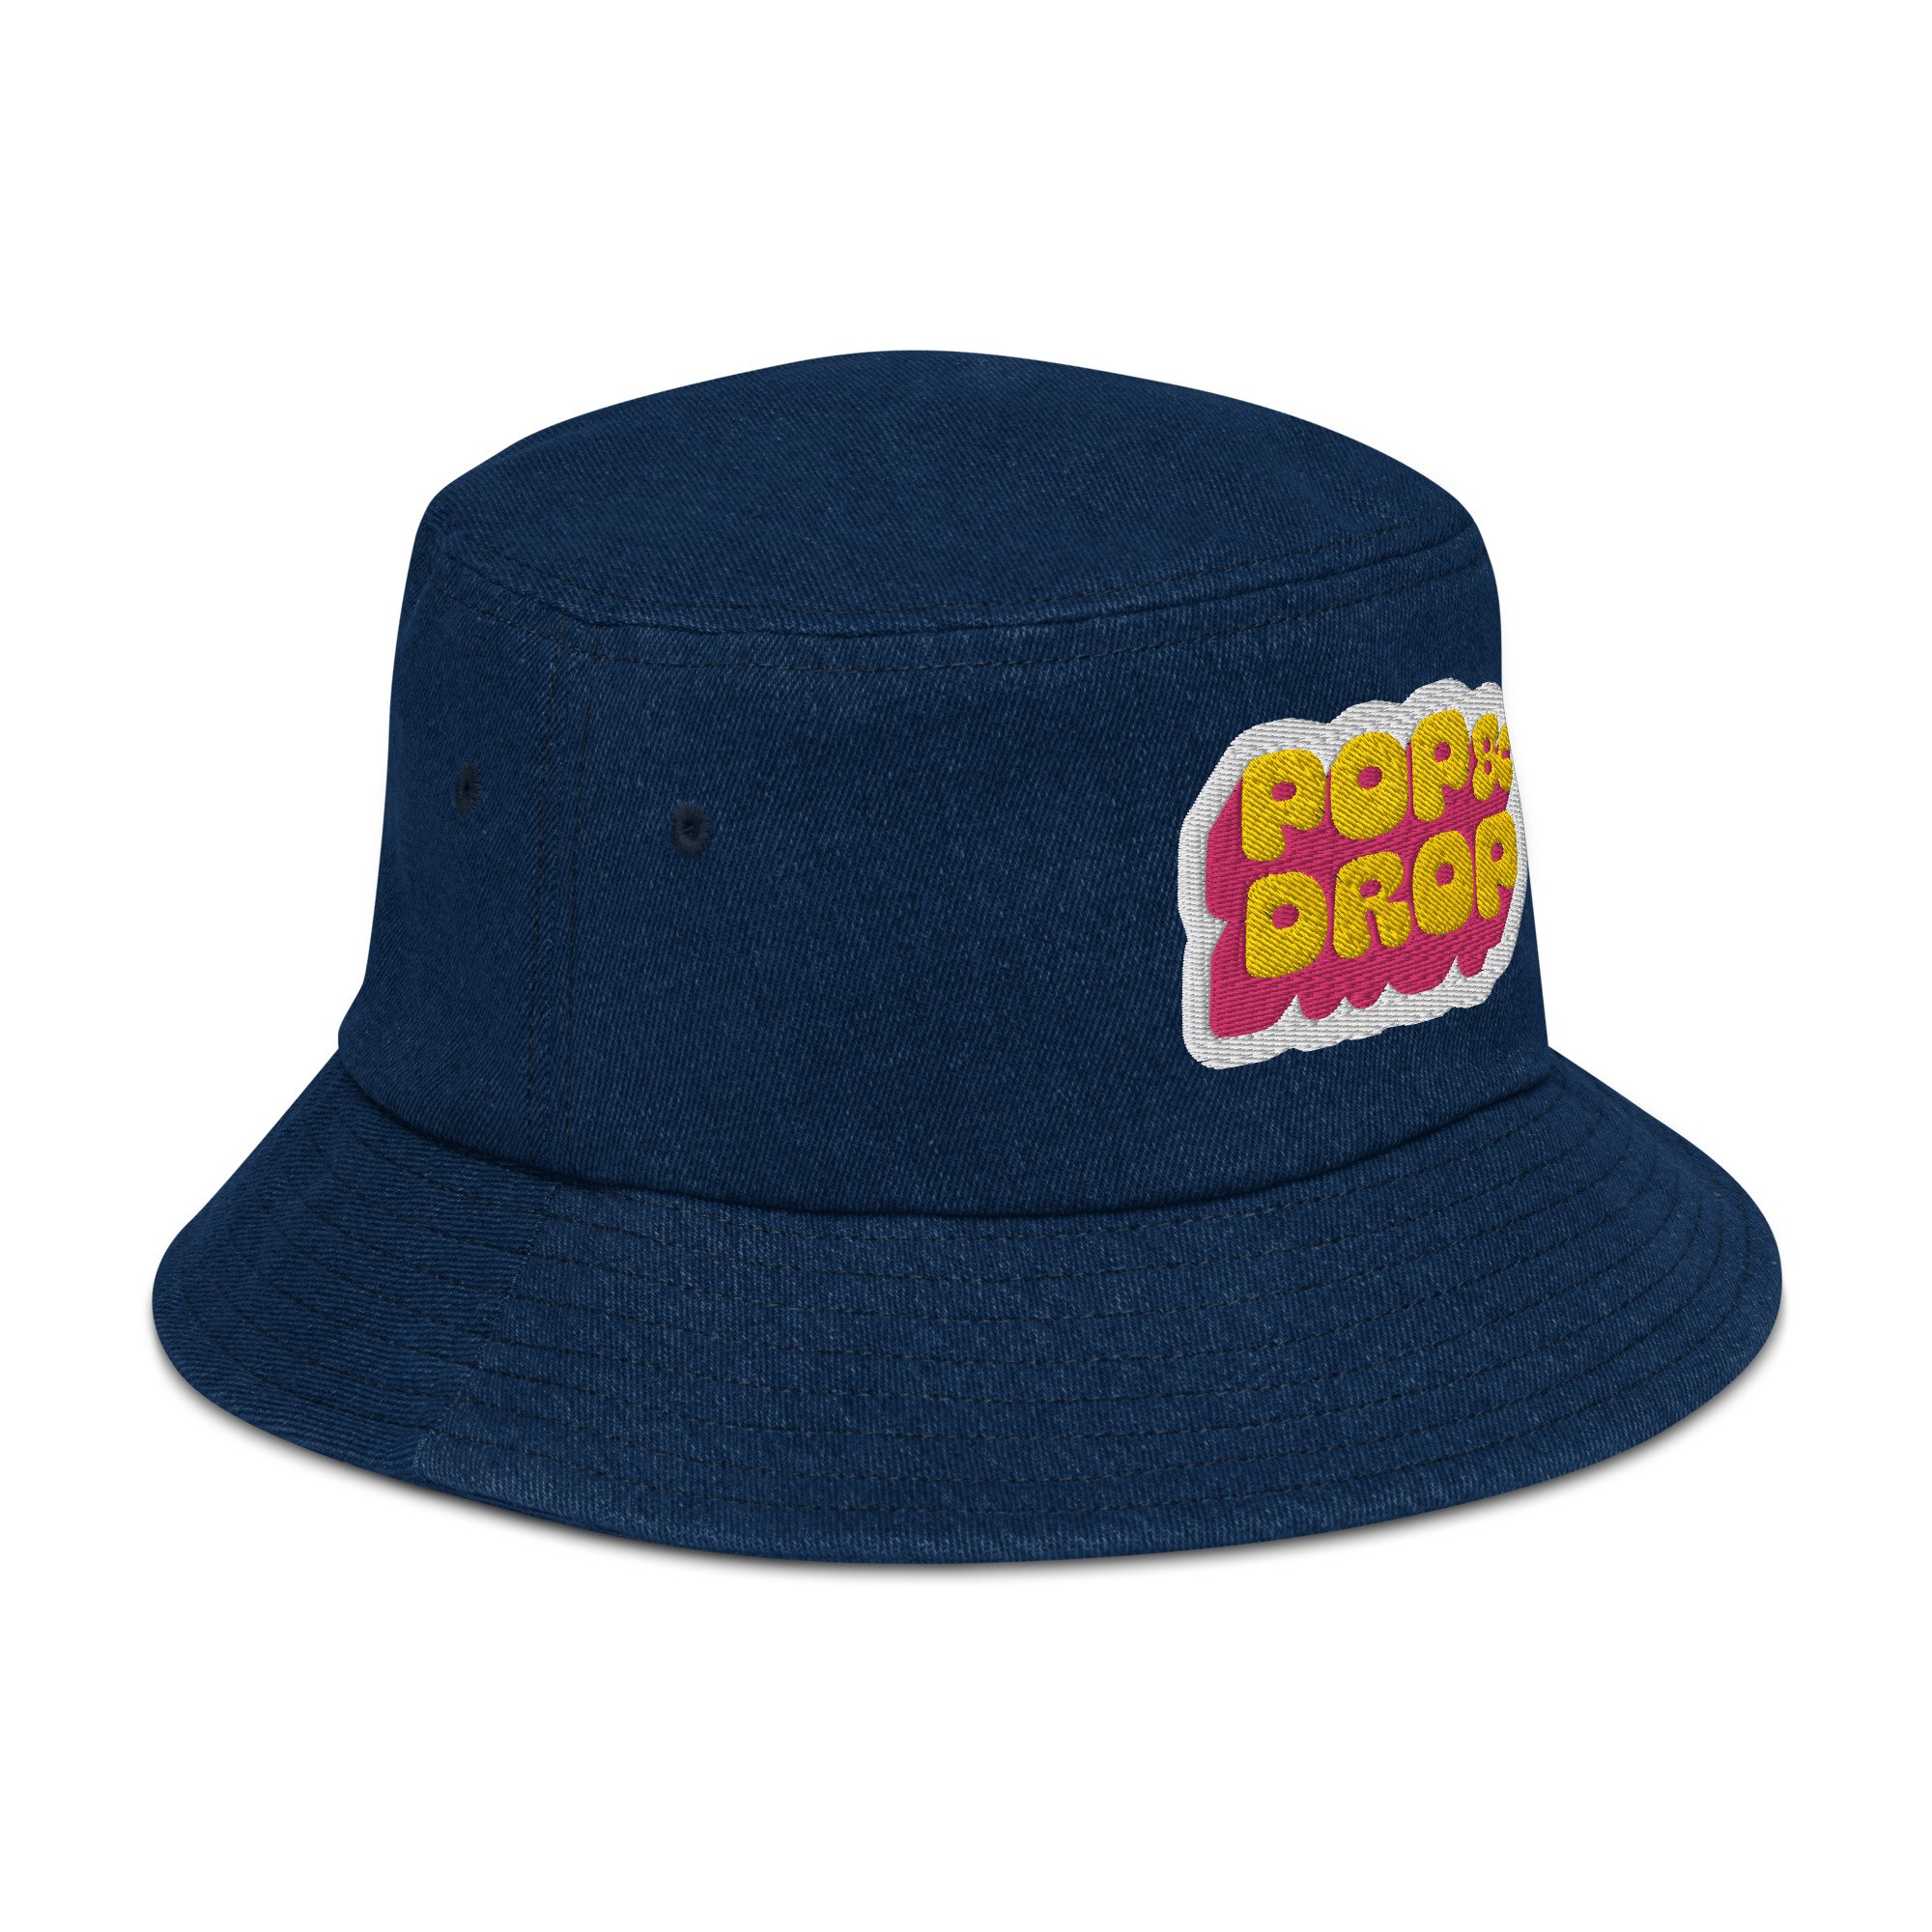 Denim bucket hat — Pop & Drop